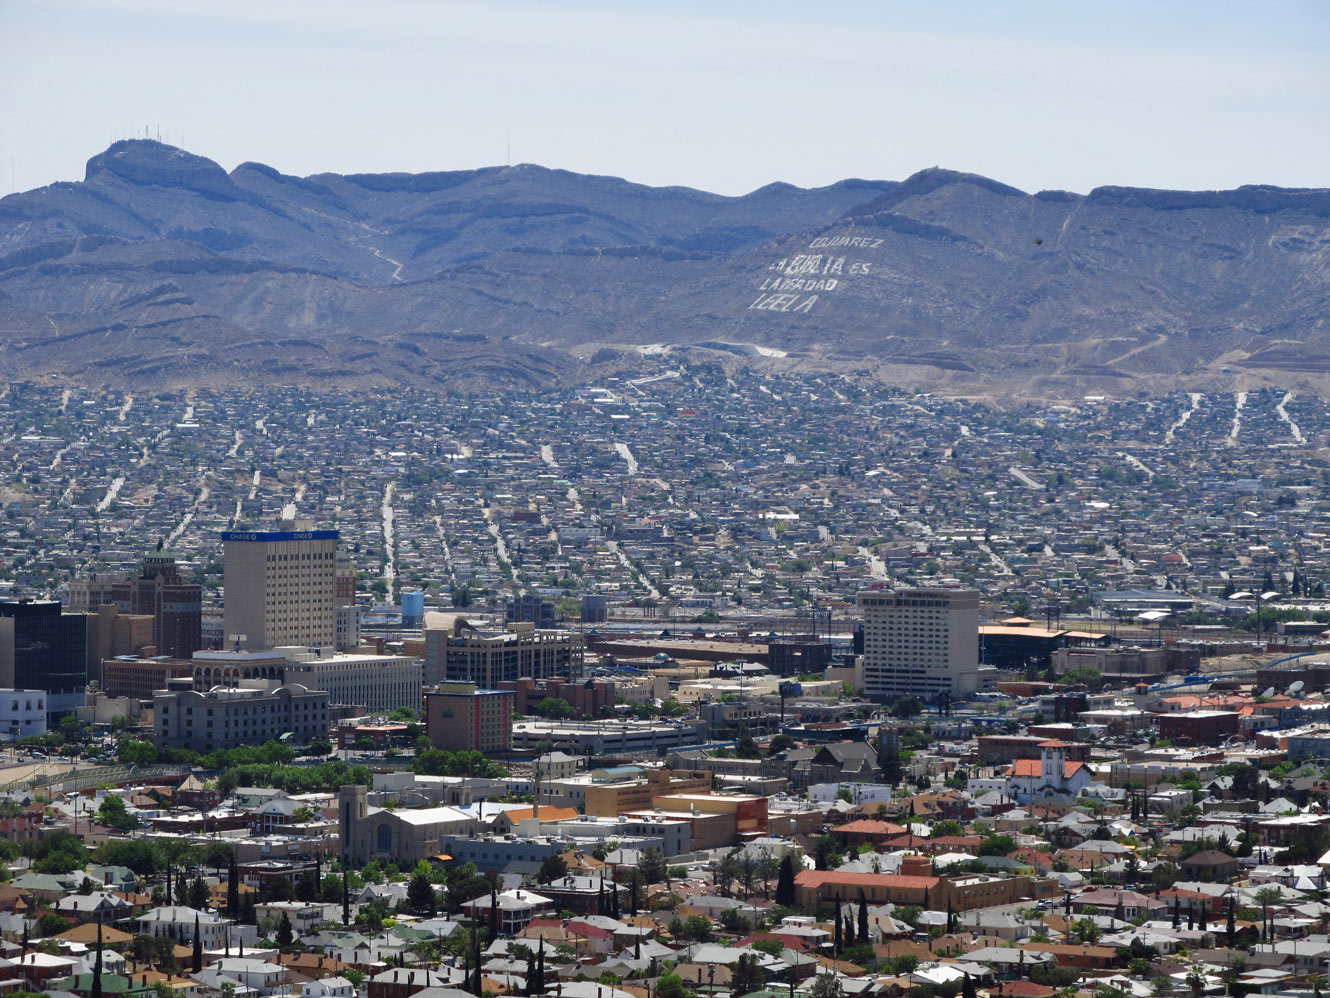 El Paso and Juarez. 